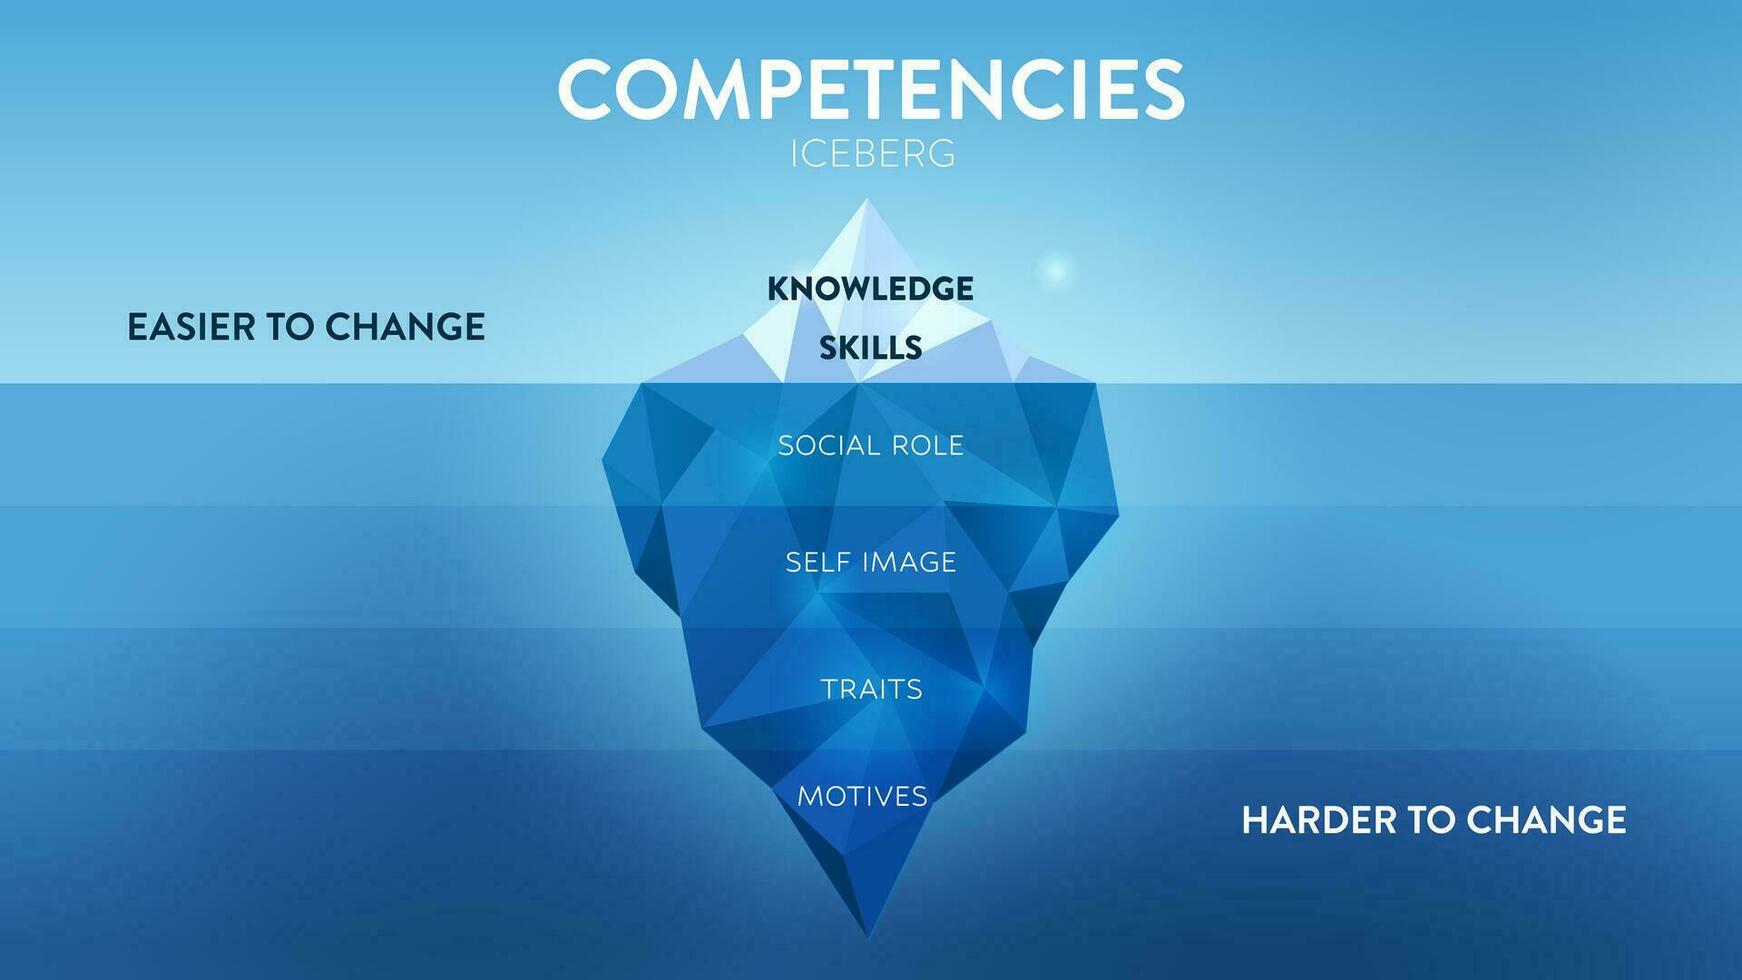 un vector ilustración de competencias iceberg modelo hrd concepto tiene 2 elementos de empleados competencia mejora, Superior es conocimiento y habilidad fácil a cambio pero atributo submarino es más difícil.